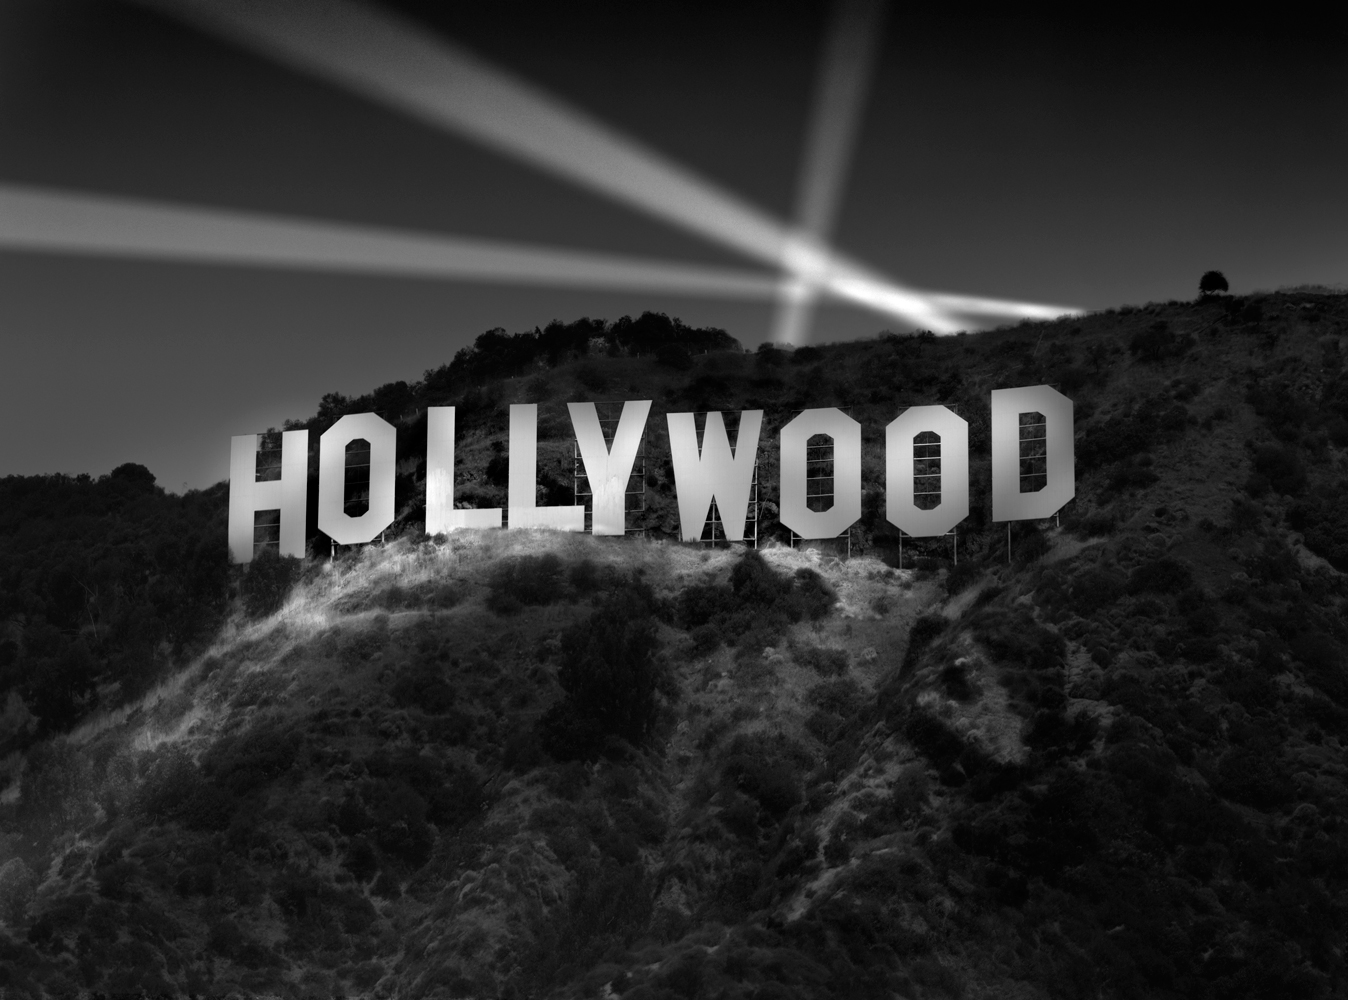 Hollywood sign, Richard Lund, Hollywood sign at night, Akira Yoshimura